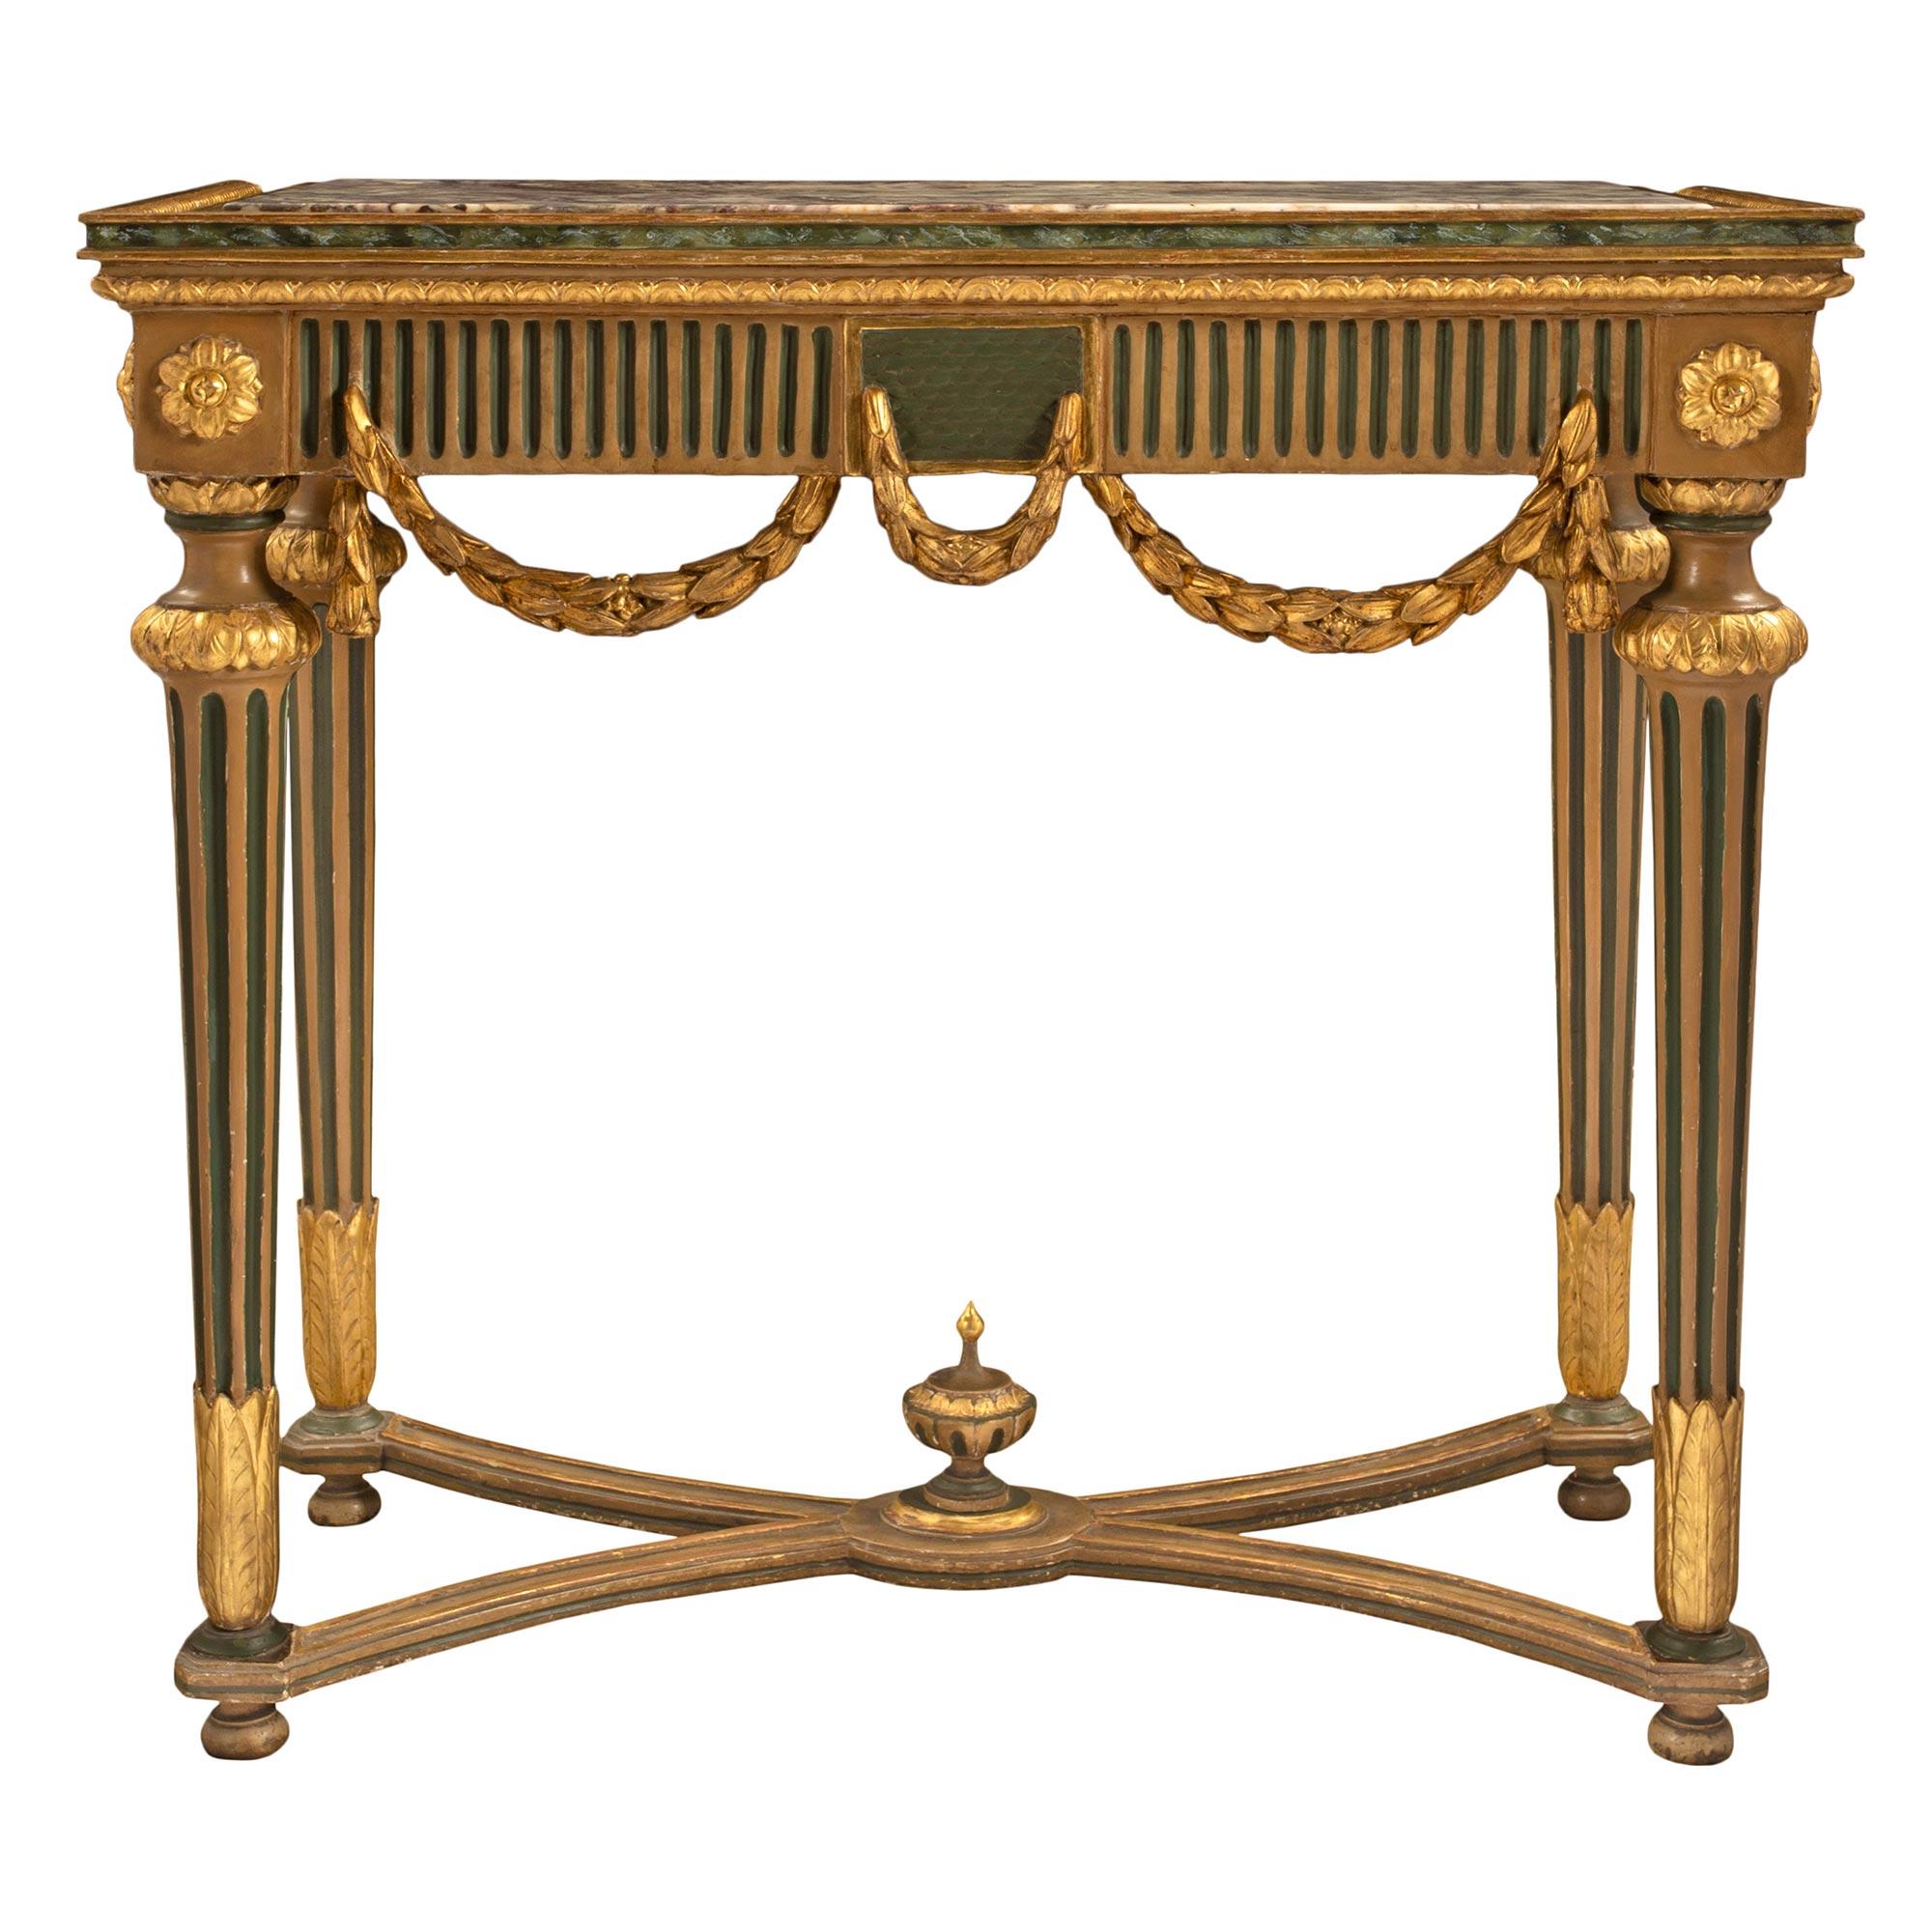 Console italienne d'époque Louis XVI du 18ème siècle en bois doré et marbre